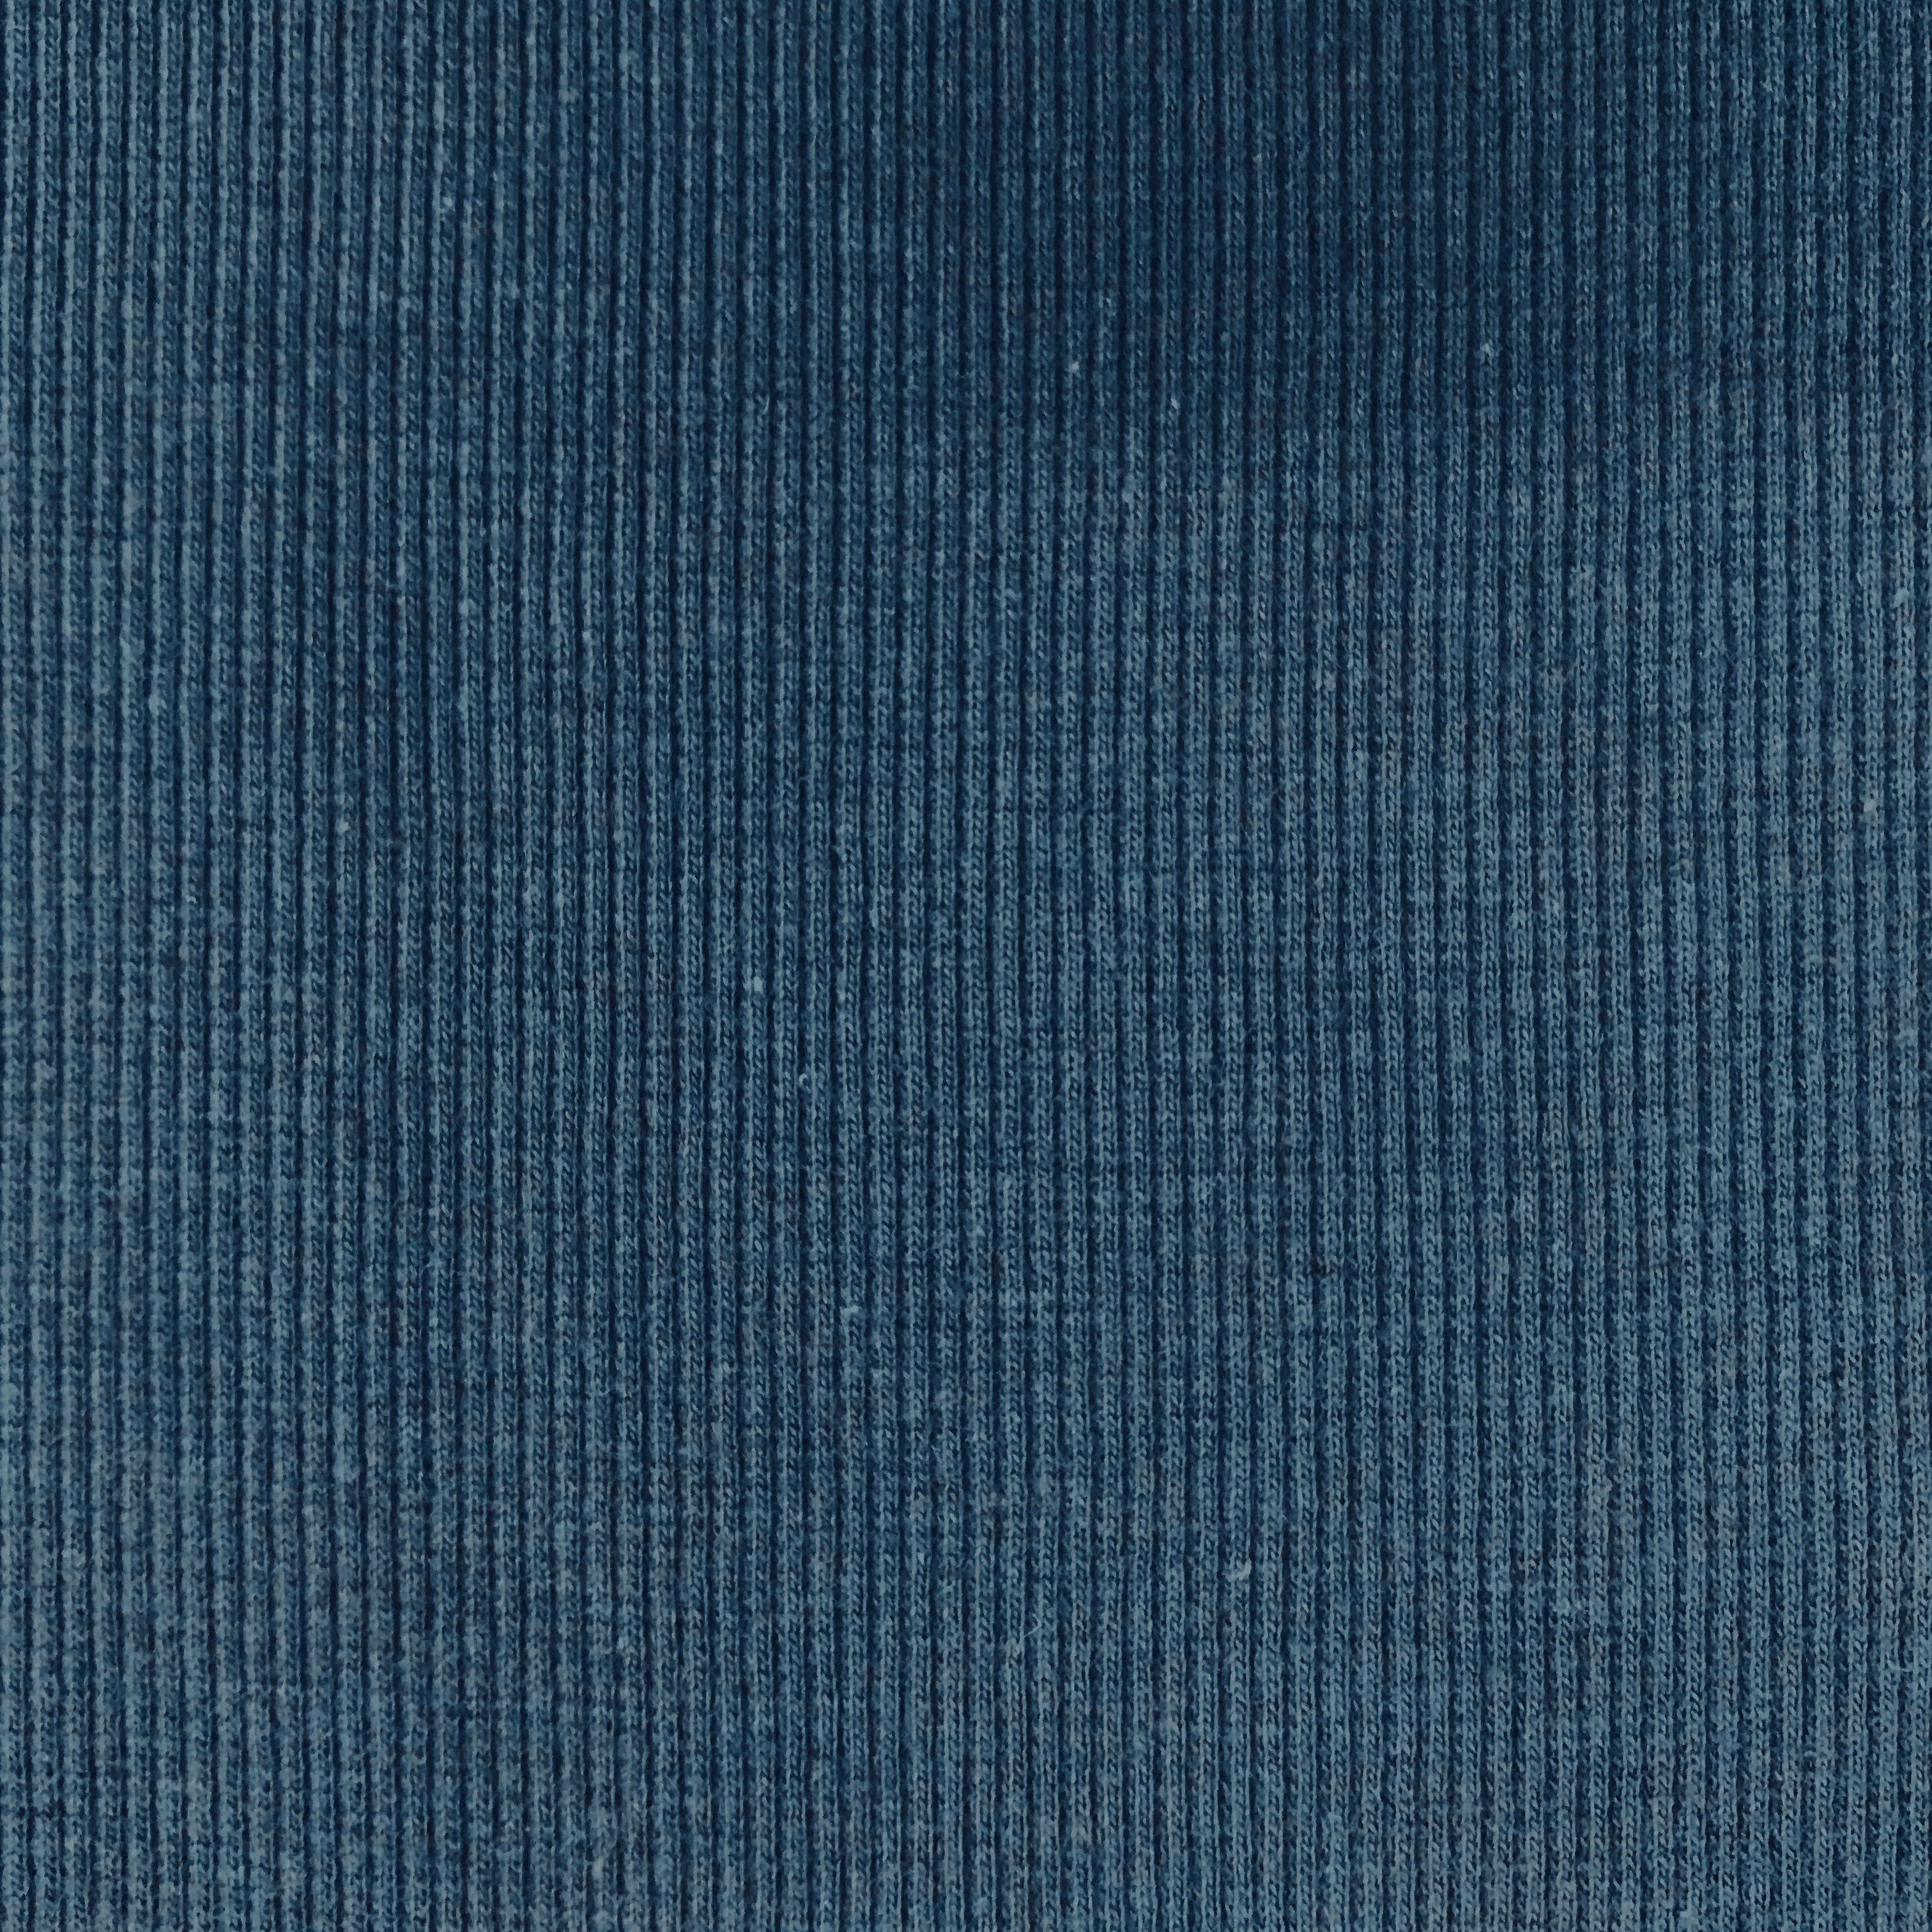 Ribbing  Fabric- Navy Blue